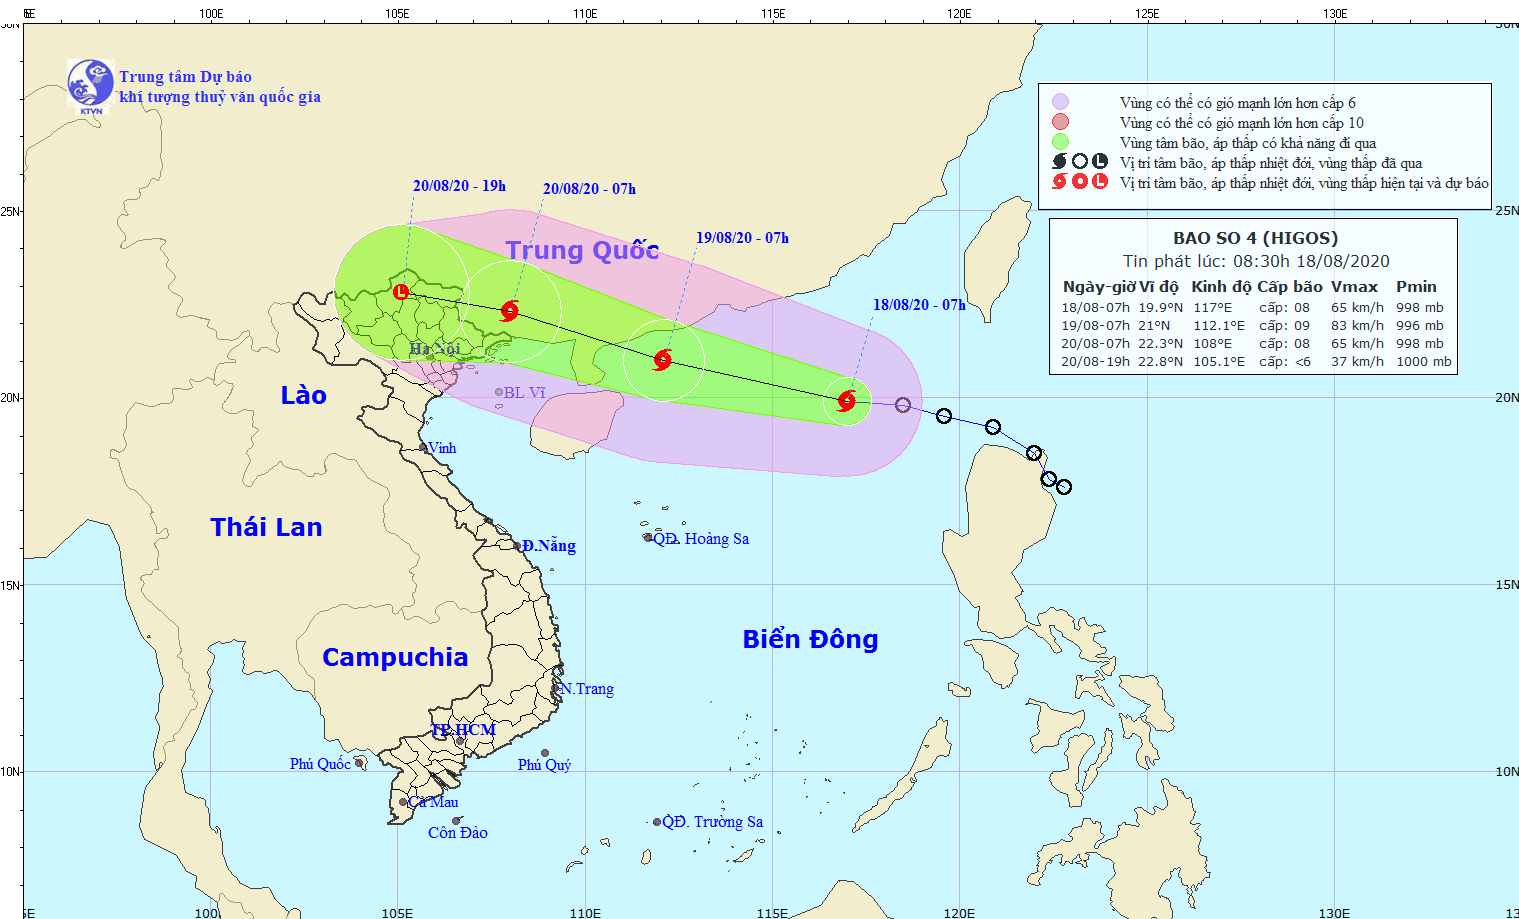 Bão số 4 giật cấp 10 trên biển Đông, Hà Nội mưa lớn dài ngày - Ảnh 1.